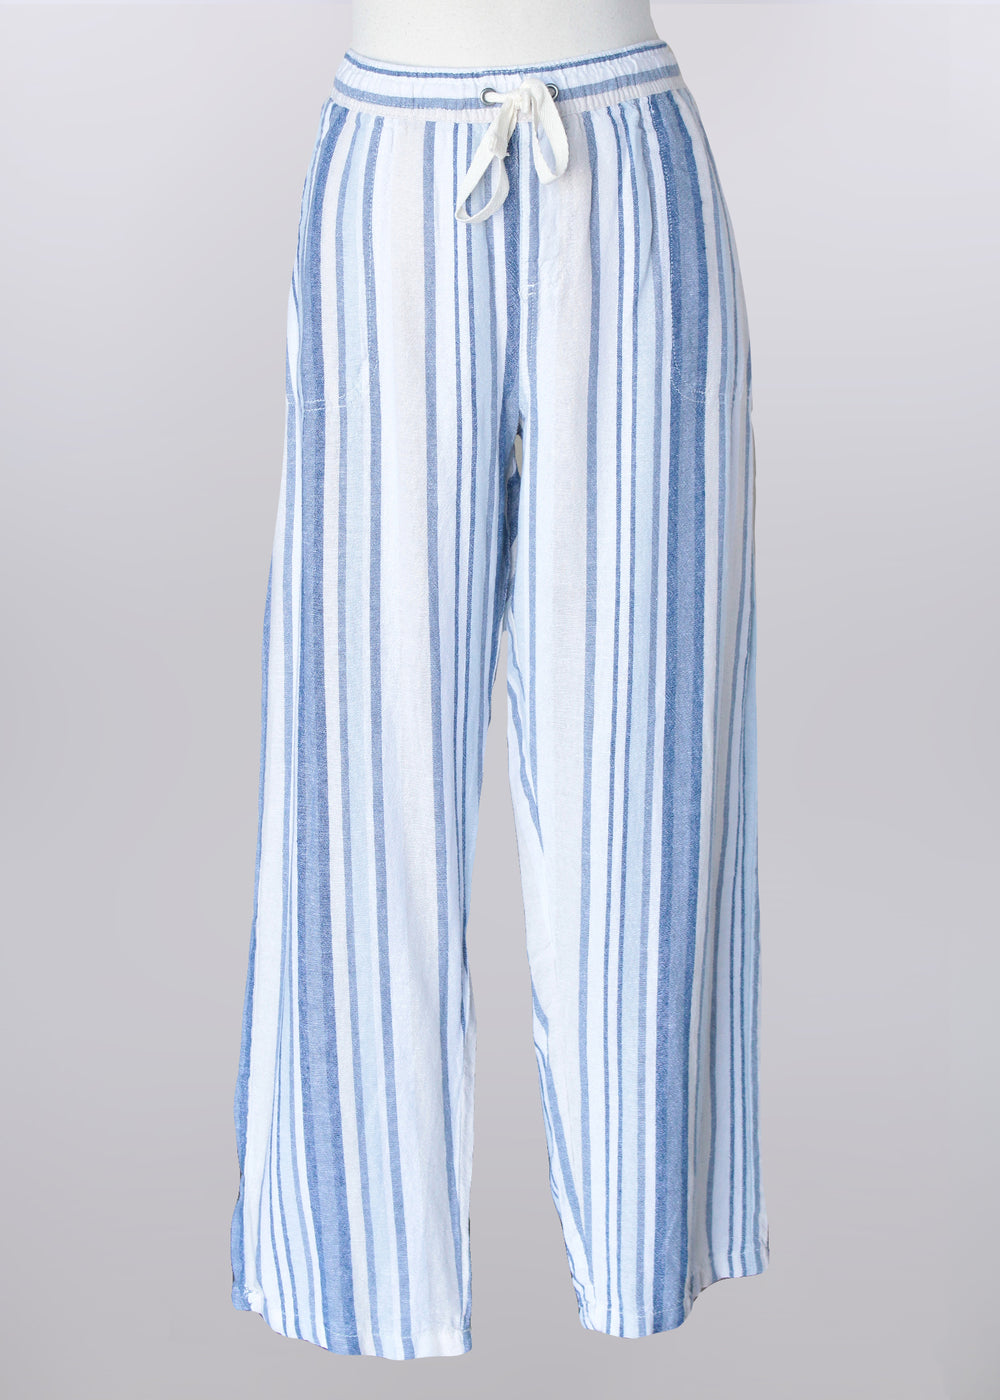 Keren Hart pants 86018, linen-blend stripe